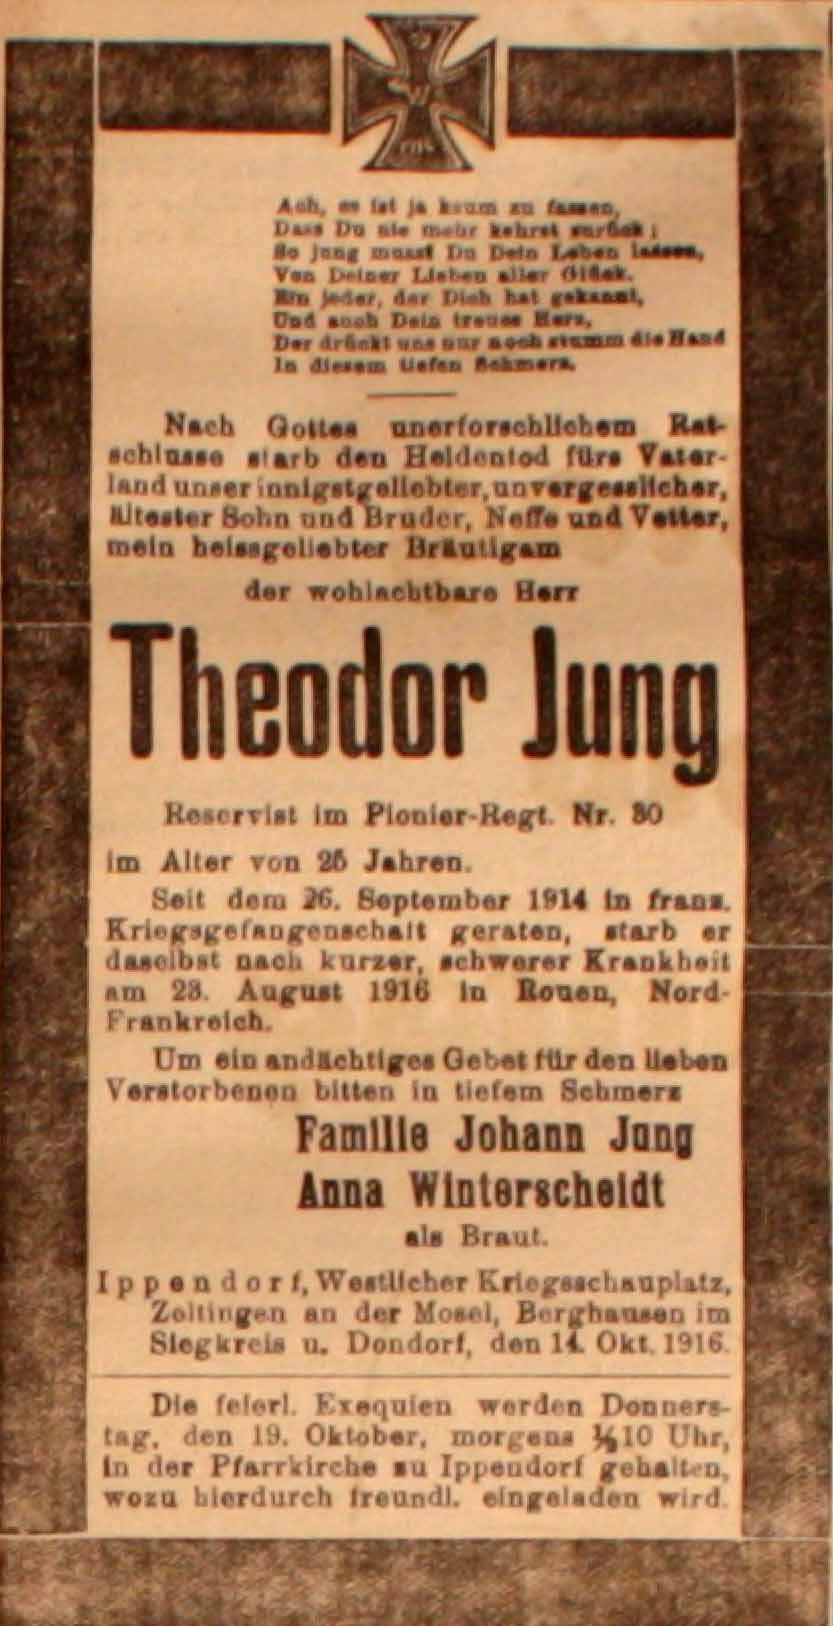 Anzeige in der Deutschen Reichs-Zeitung vom 15. Oktober 1916